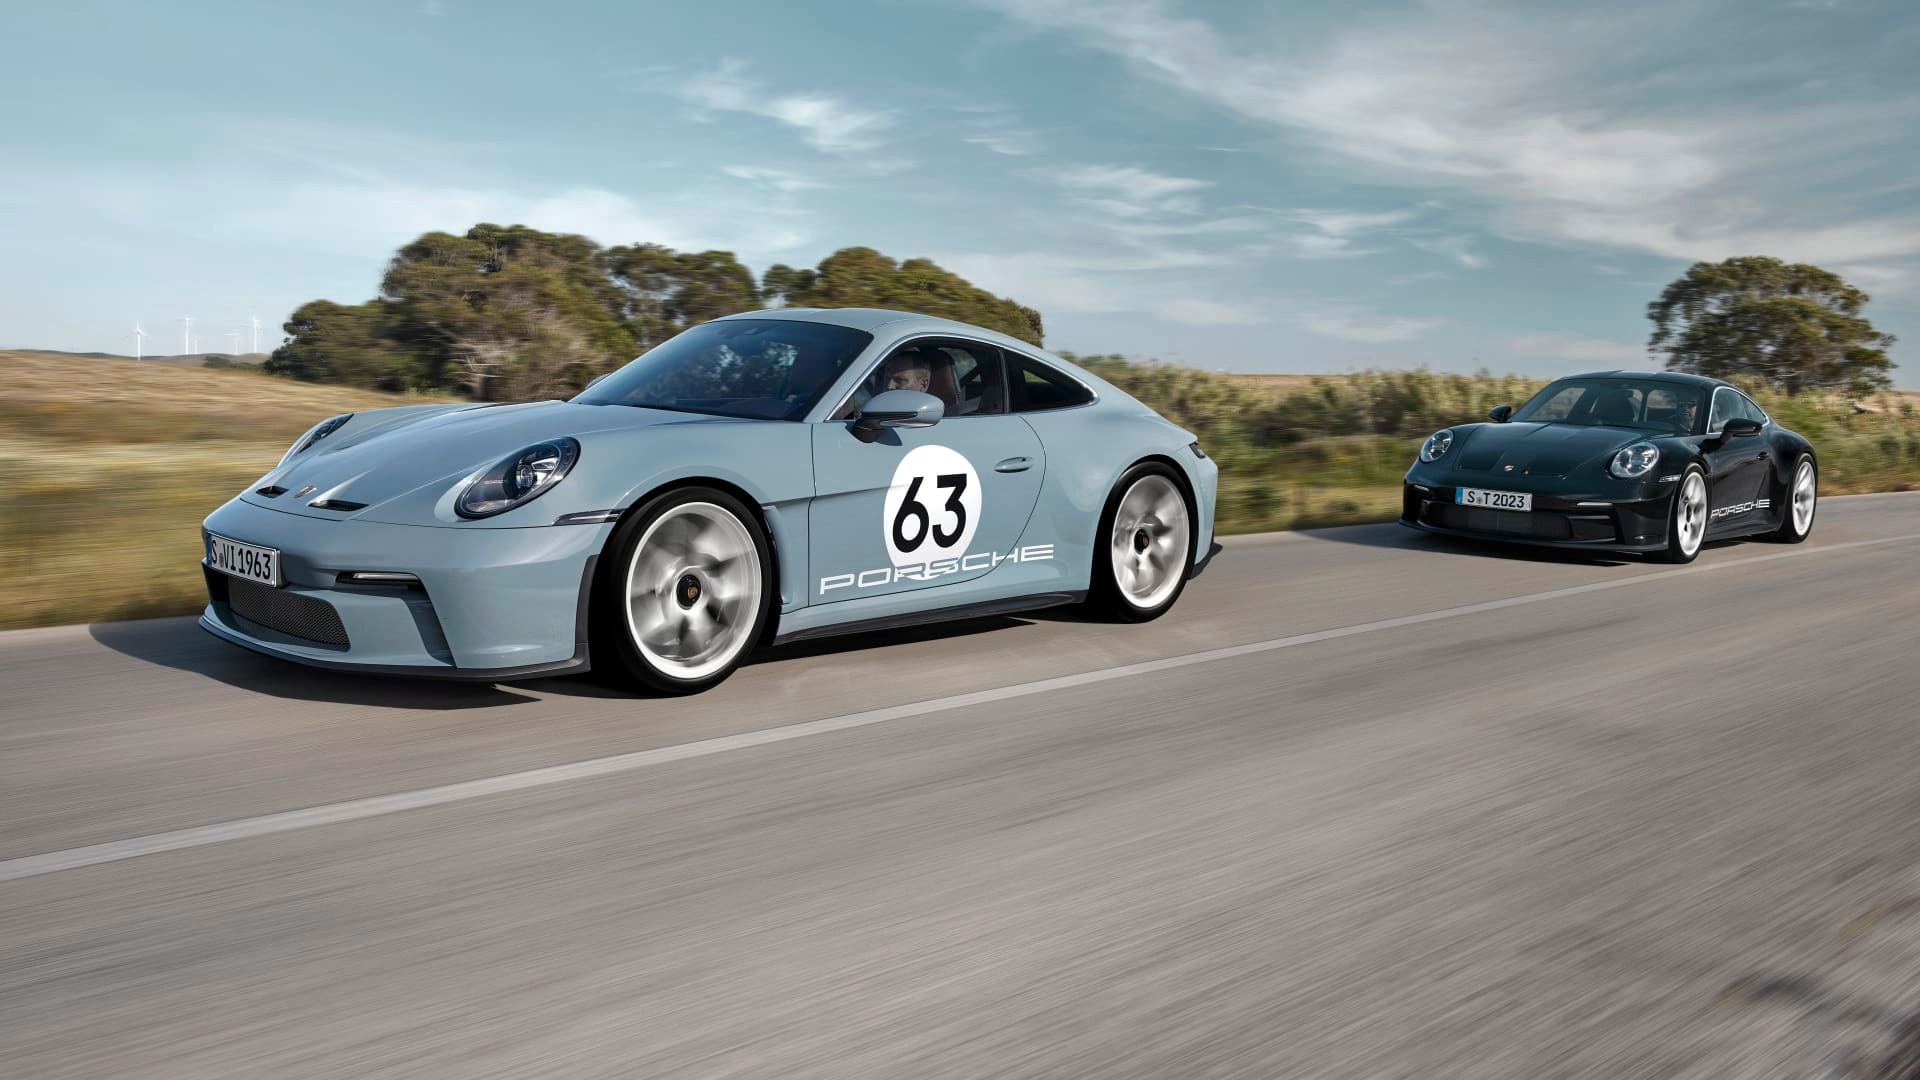 Porsche 'giam' xe giới hạn 12 tháng để tránh tình trạng đầu cơ mua đi bán lại - Ảnh 2.